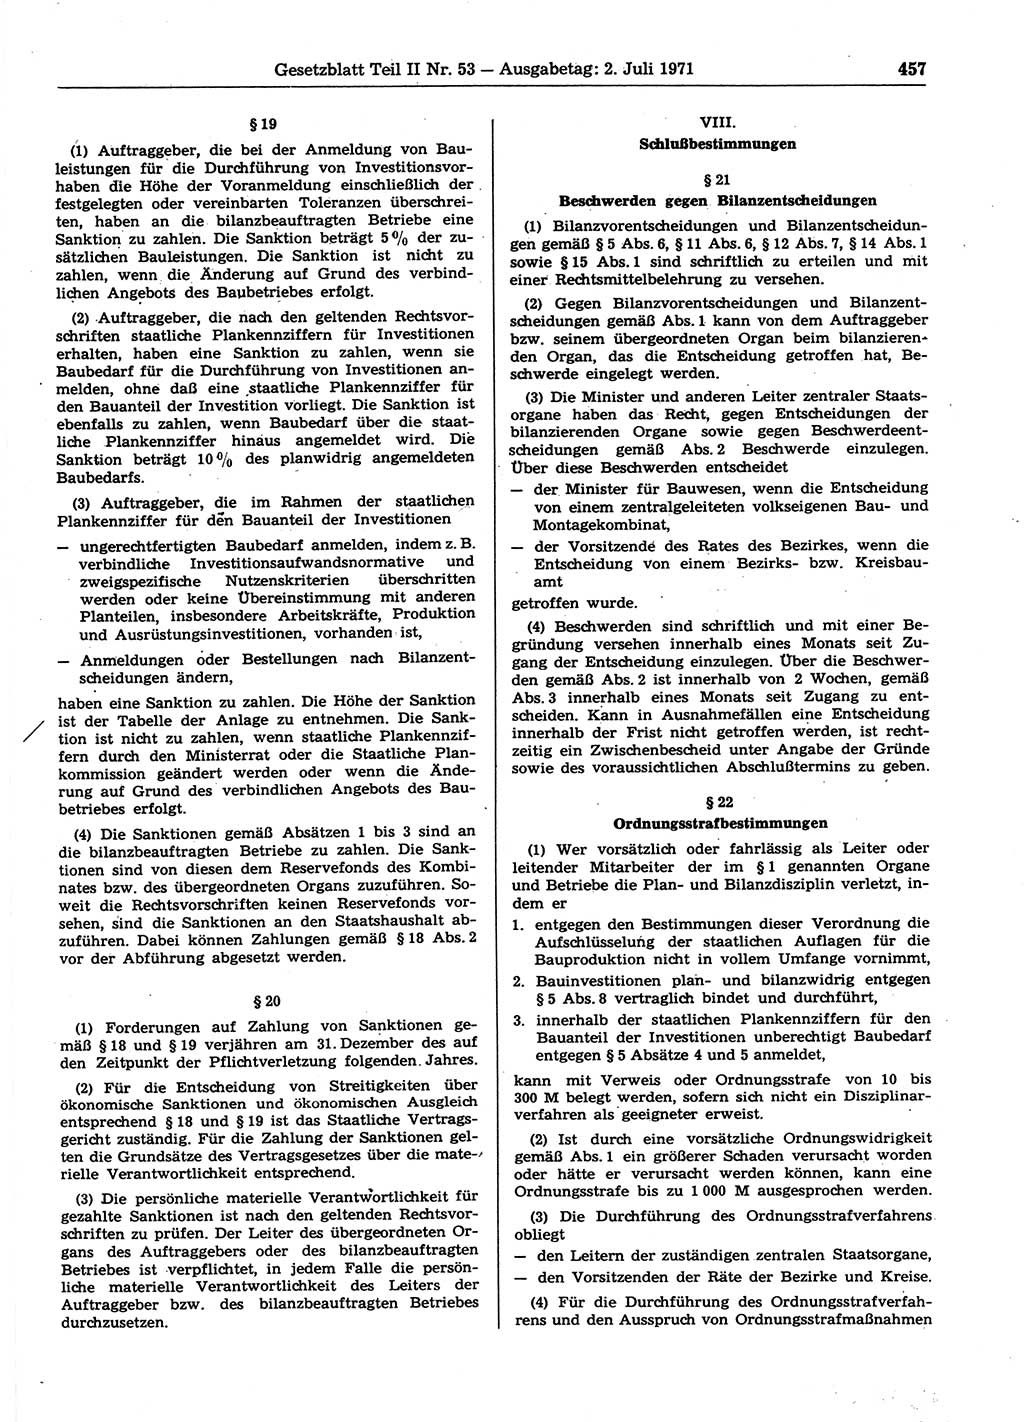 Gesetzblatt (GBl.) der Deutschen Demokratischen Republik (DDR) Teil ⅠⅠ 1971, Seite 457 (GBl. DDR ⅠⅠ 1971, S. 457)